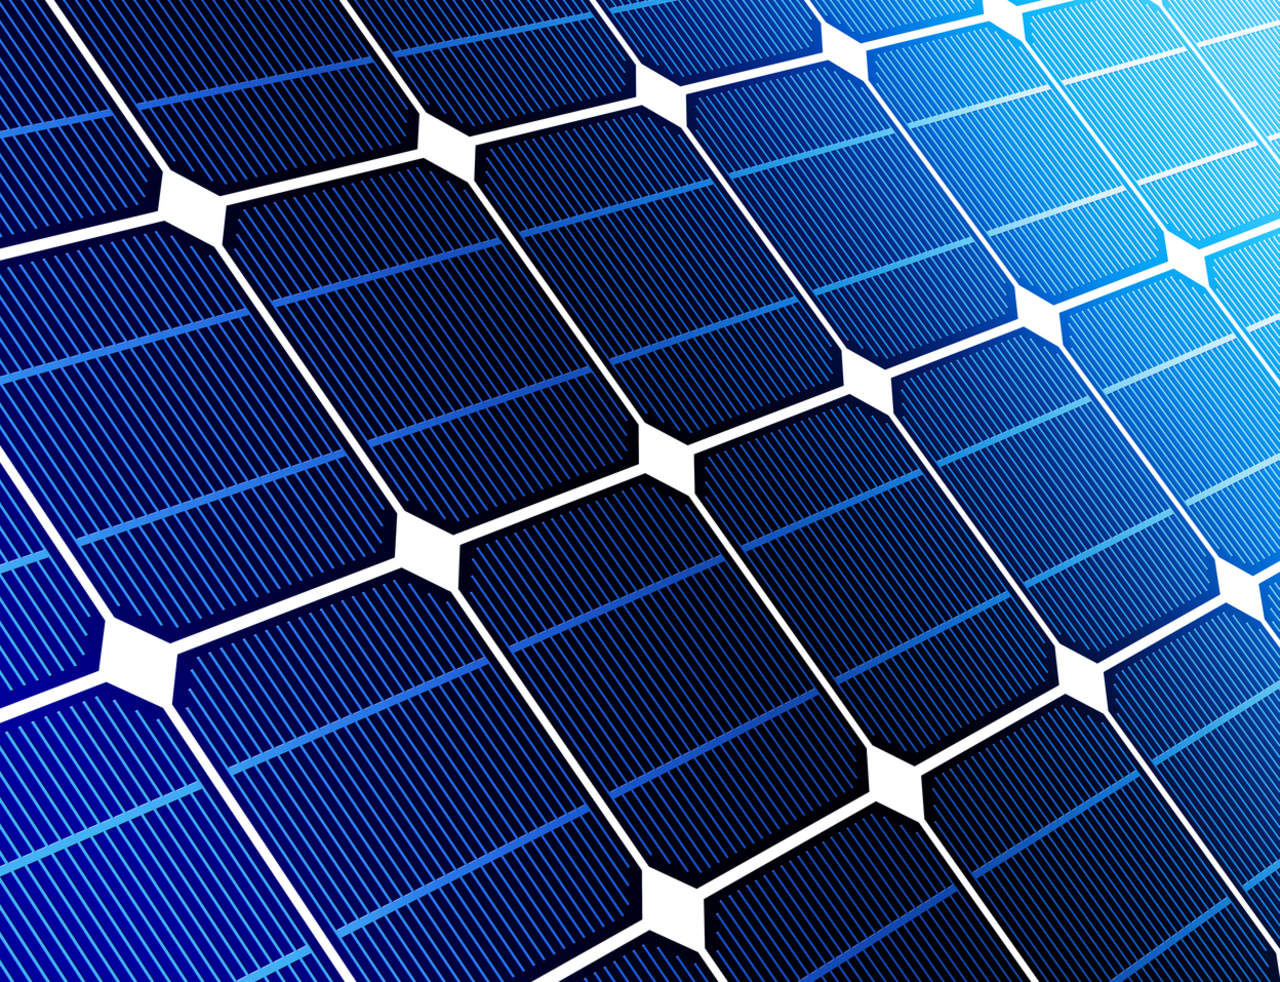 Por medio de esta aplicación se puede monitorear el rendimientos de las celdas solares en una base de datos. (ARCHIVO)